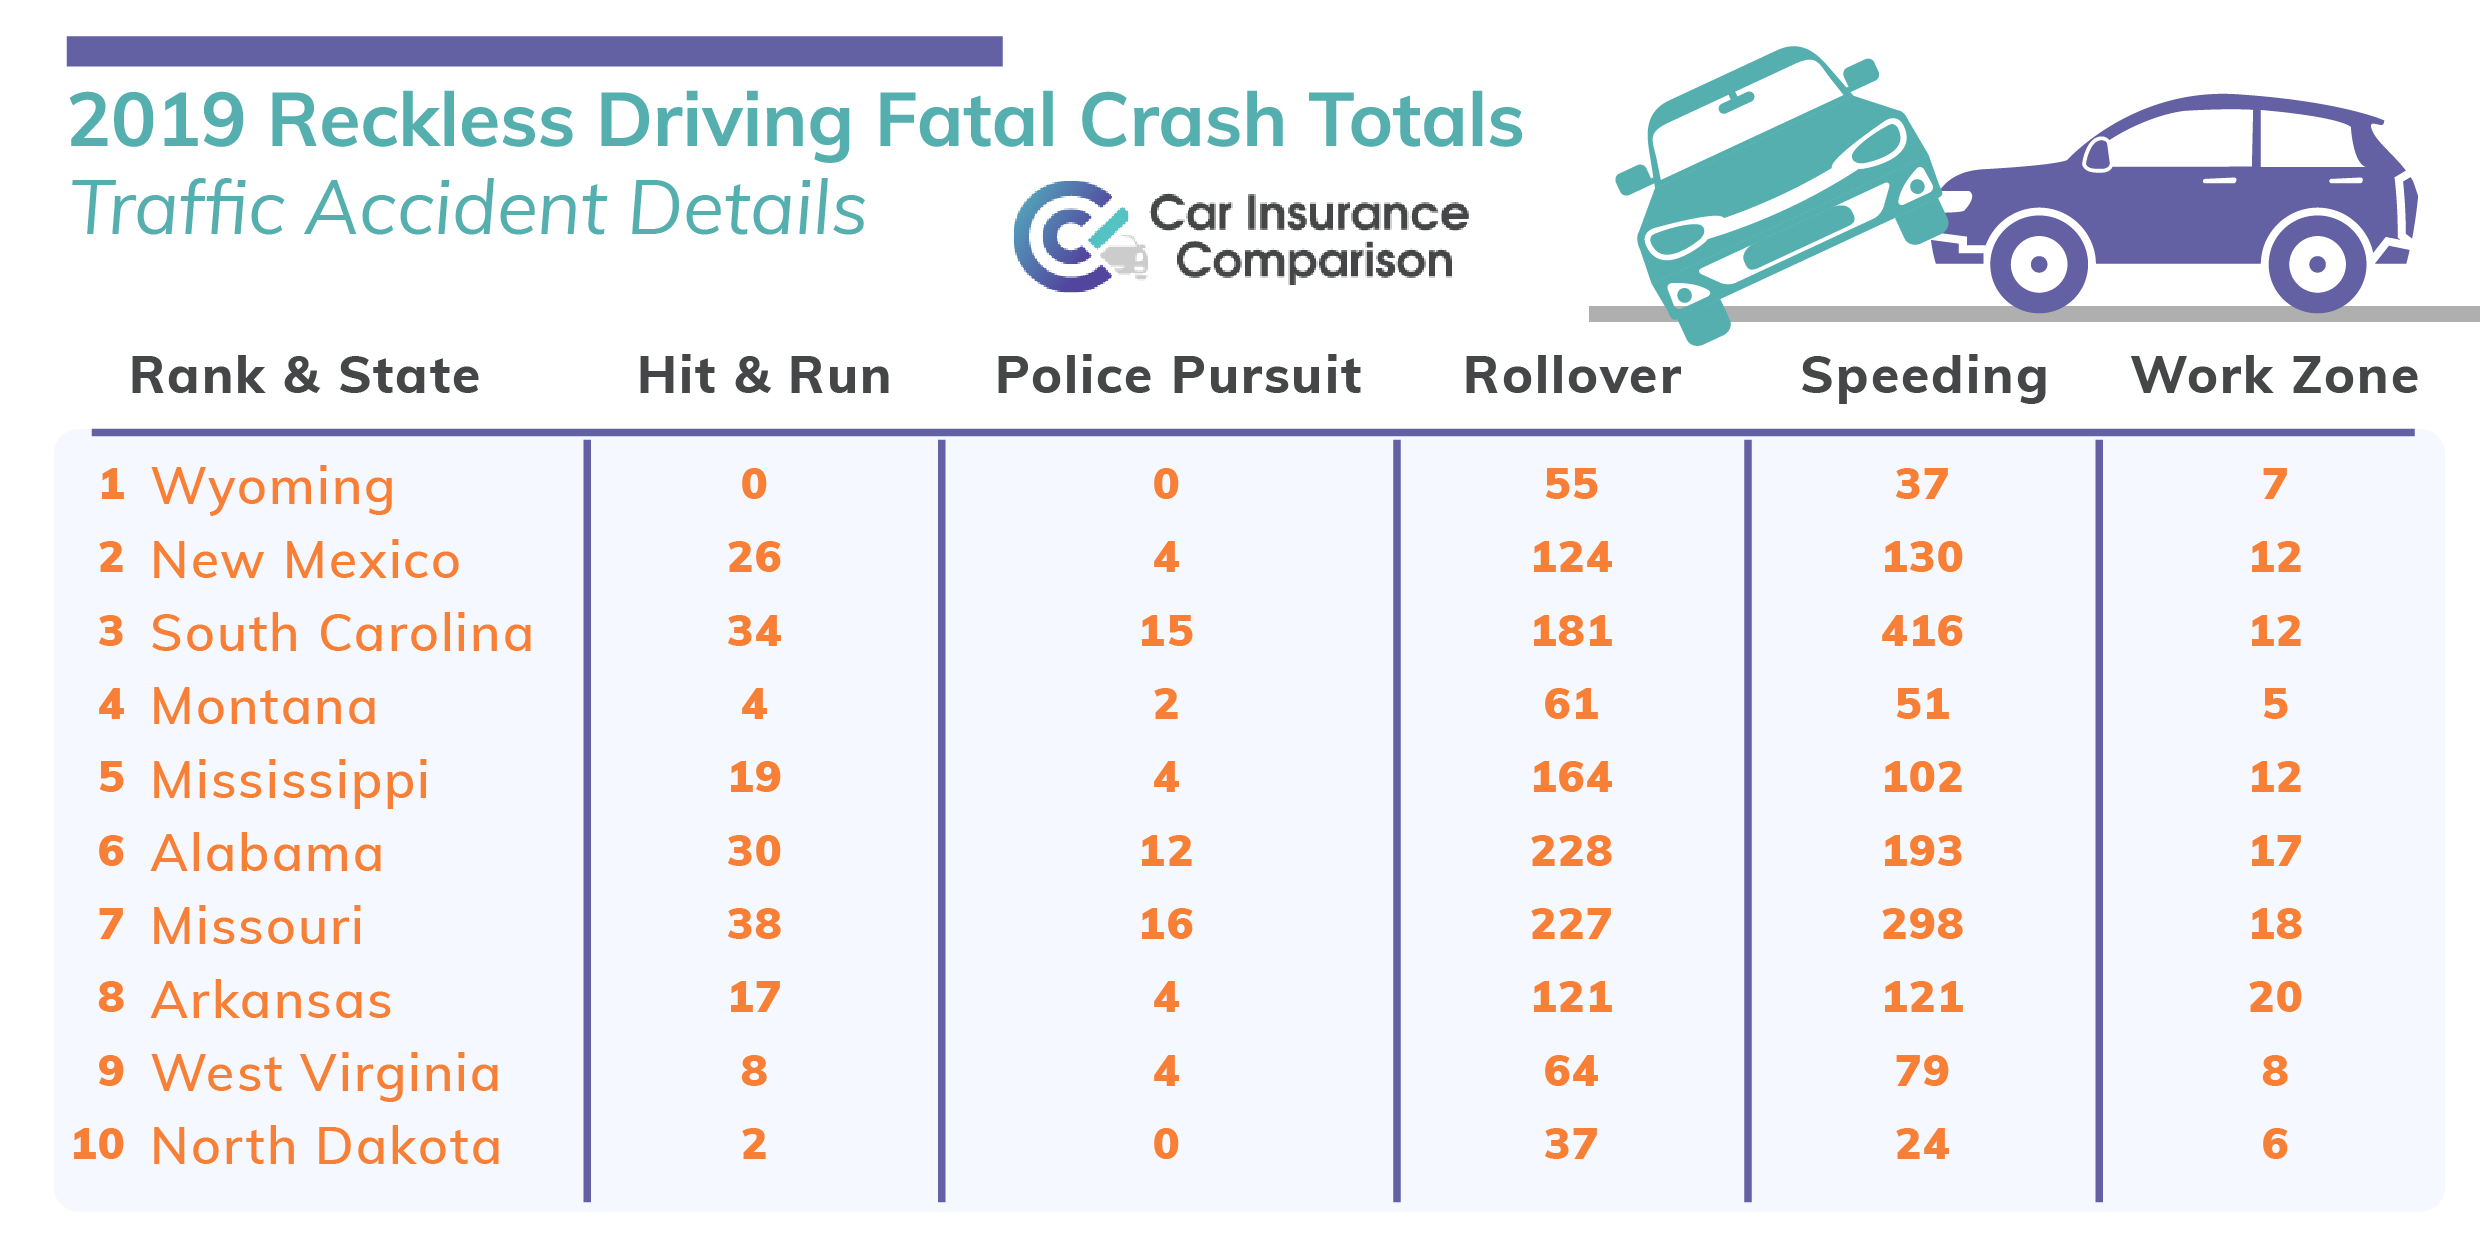 2019 Reckless Driving Fatal Crash Totals